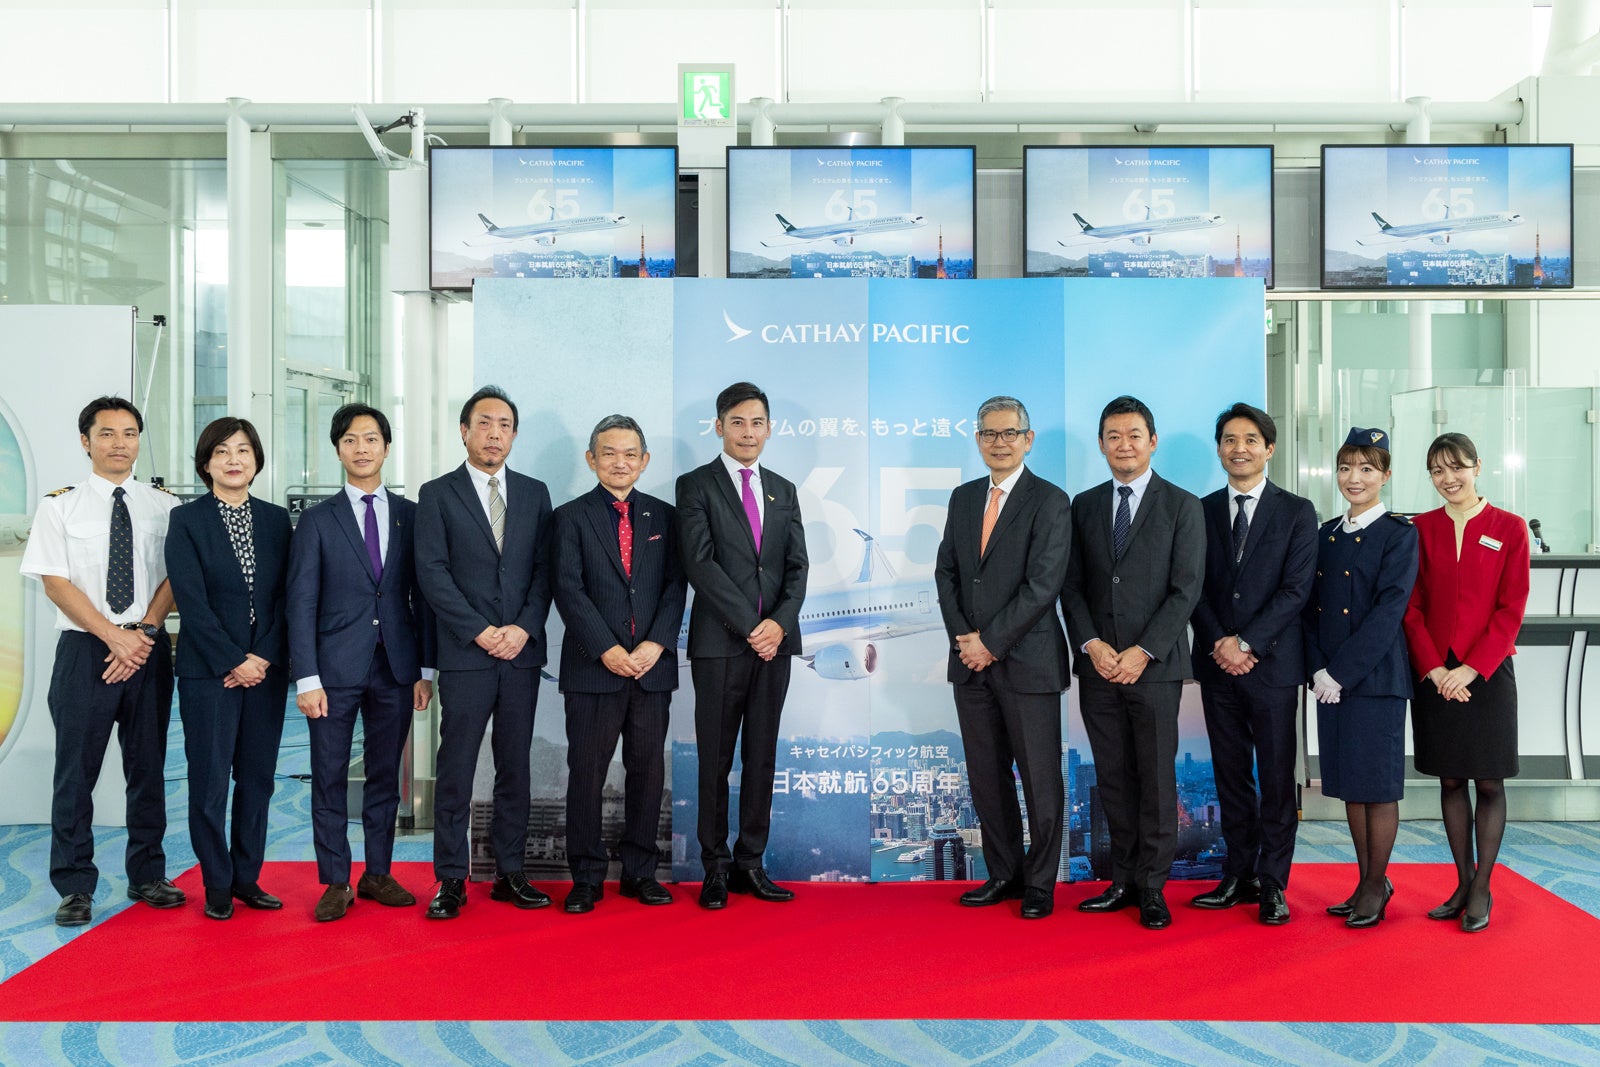 【キャセイ】キャセイ、日本就航65周年を祝して就航記念日に羽田空港にてイベント開催